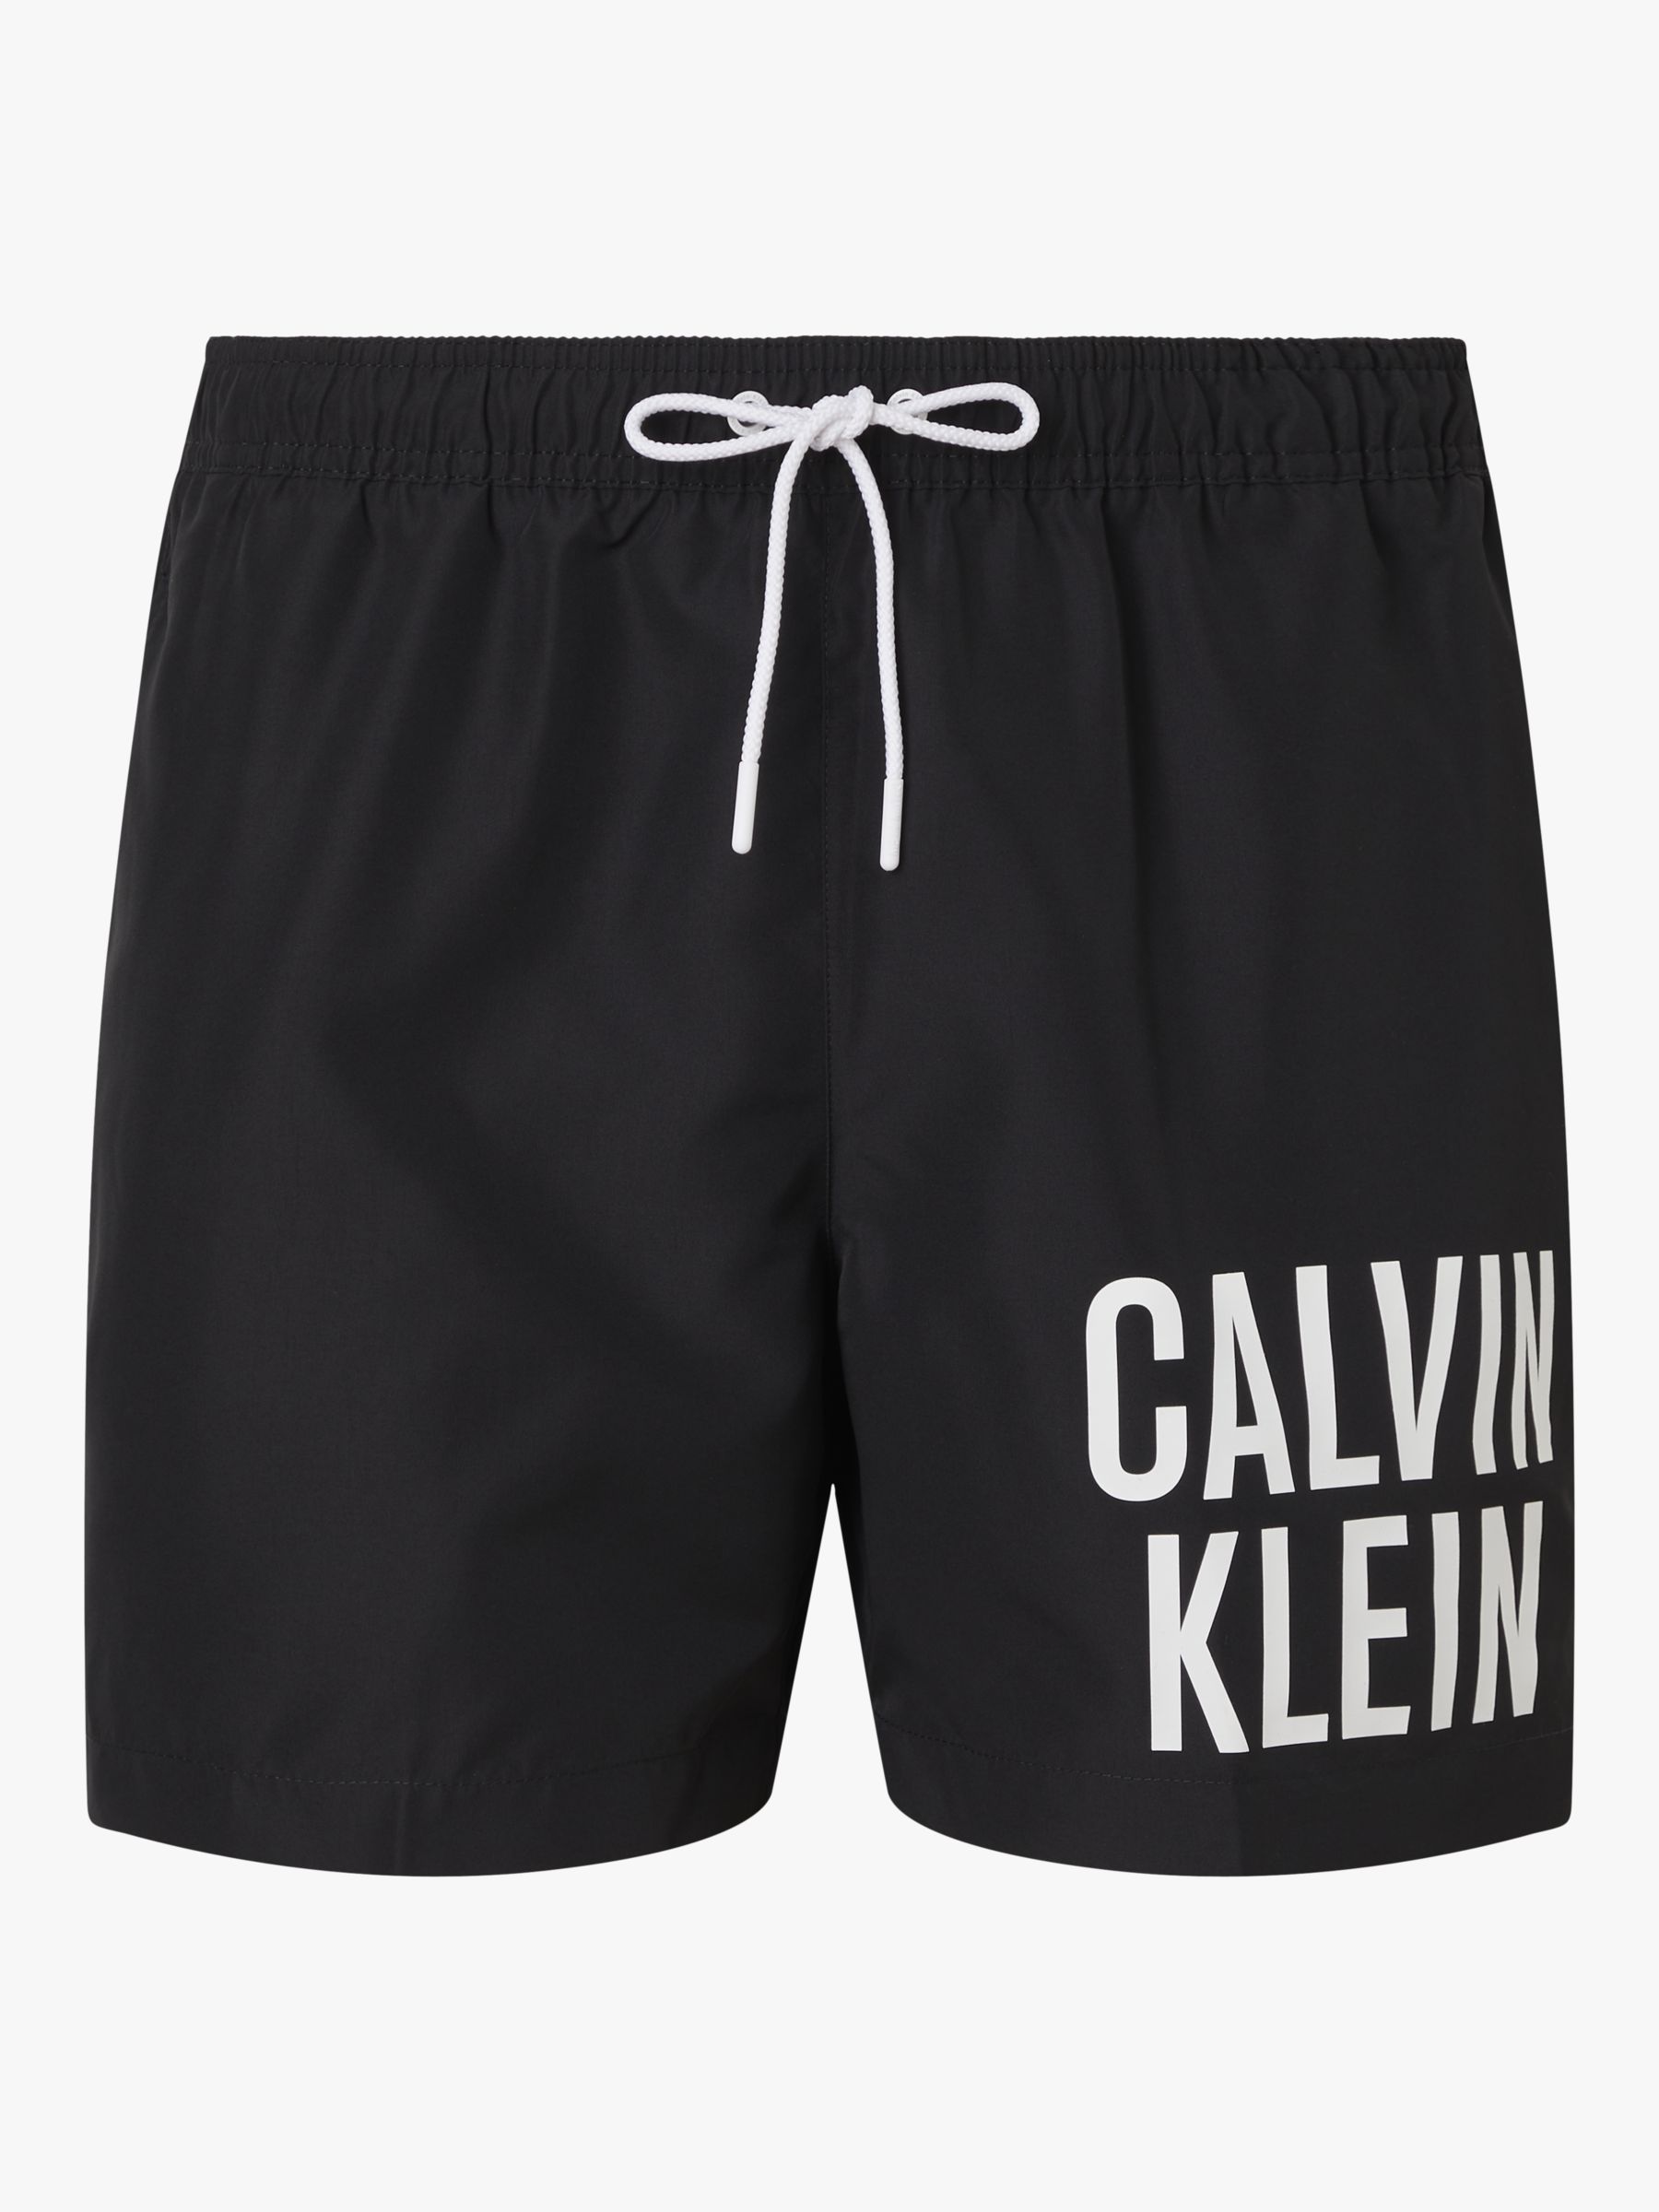 Calvin Klein Logo Tape Beach/Gym Shorts, PVH Classic White